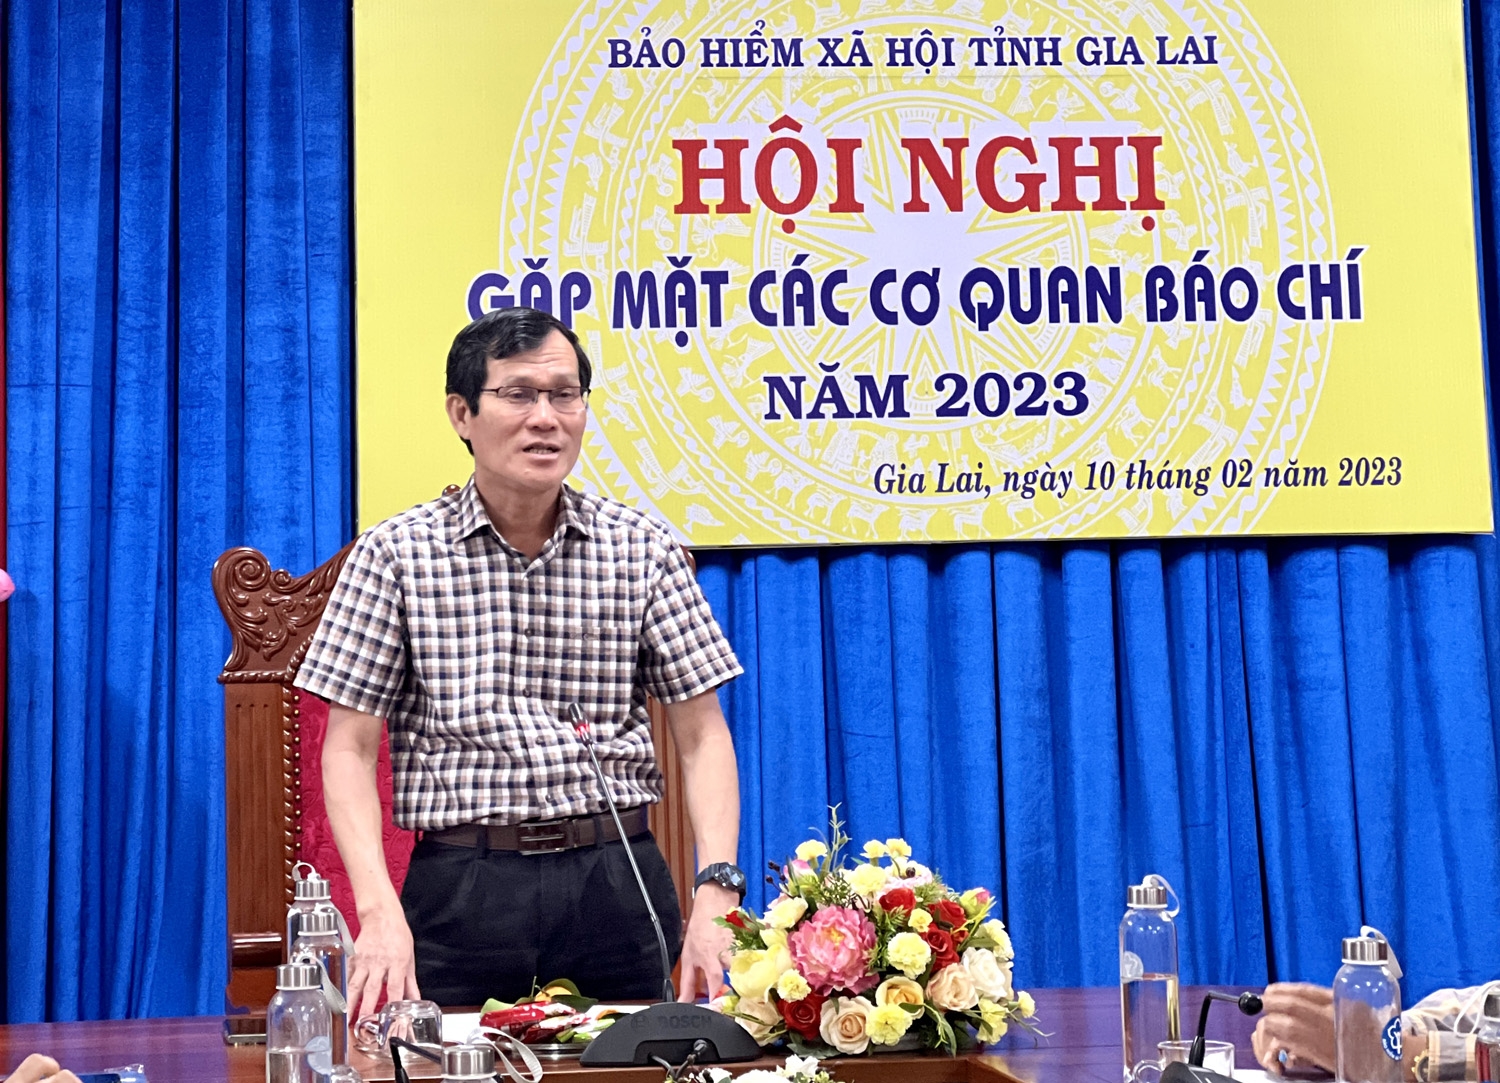 Ông Trần Văn Lực - Giám đốc BHXH tỉnh mong muốn tiếp tục nhận được sự đồng hành của các cơ quan báo chí trong công tác tuyên truyền góp phần đưa các chính sách BHXH, BHYT, BHTN đến các tầng lớp Nhân dân